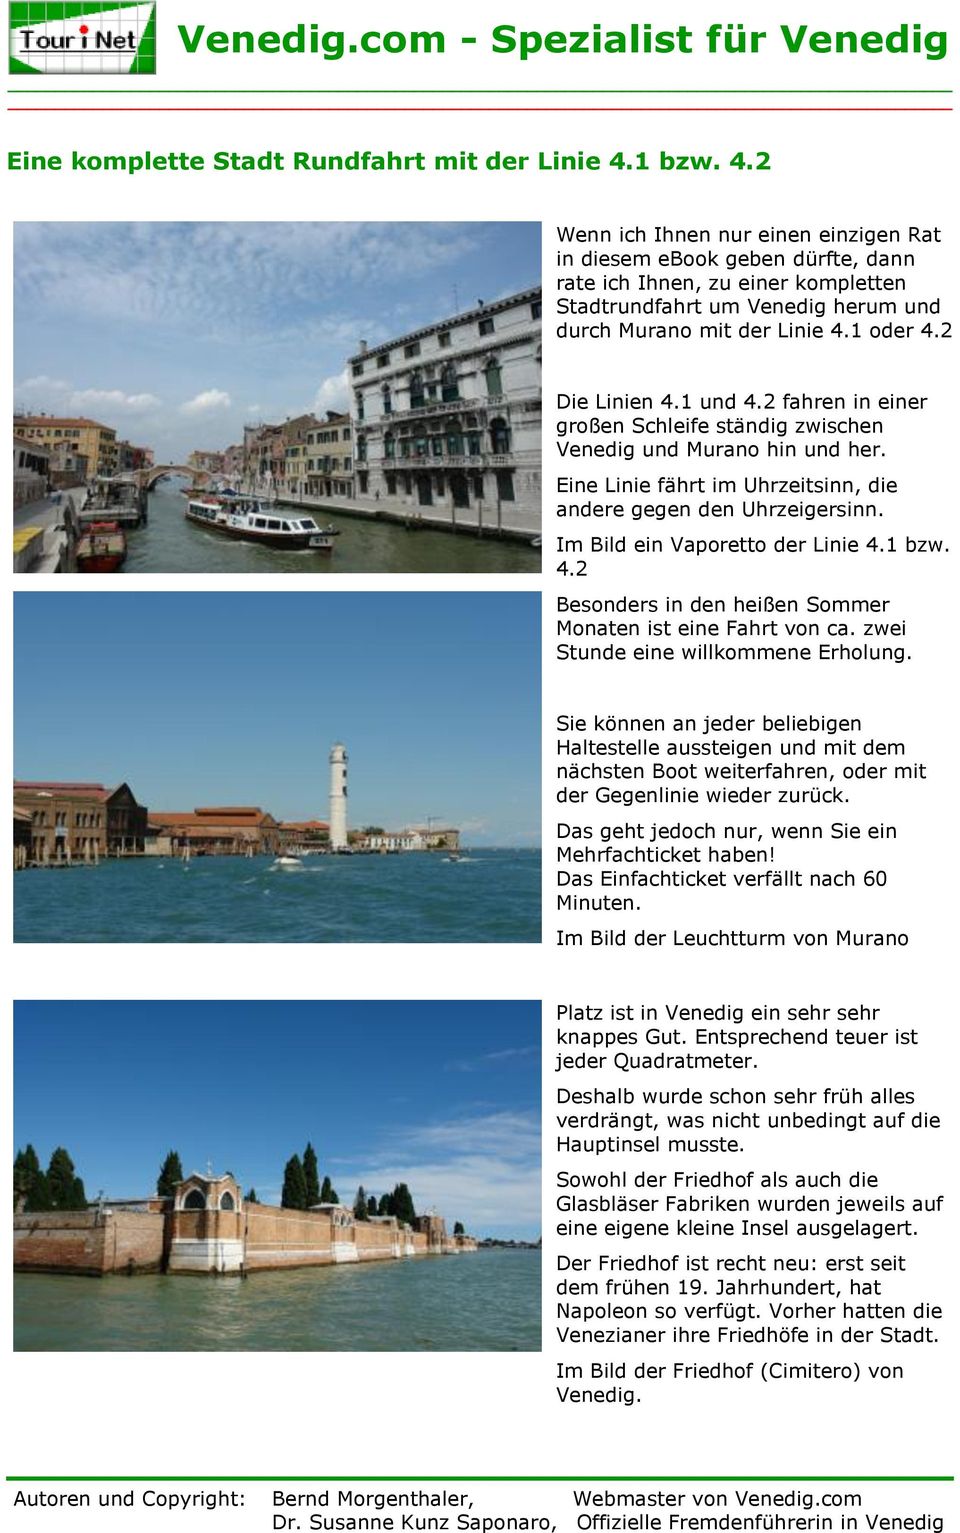 2 Die Linien 4.1 und 4.2 fahren in einer großen Schleife ständig zwischen Venedig und Murano hin und her. Eine Linie fährt im Uhrzeitsinn, die andere gegen den Uhrzeigersinn.